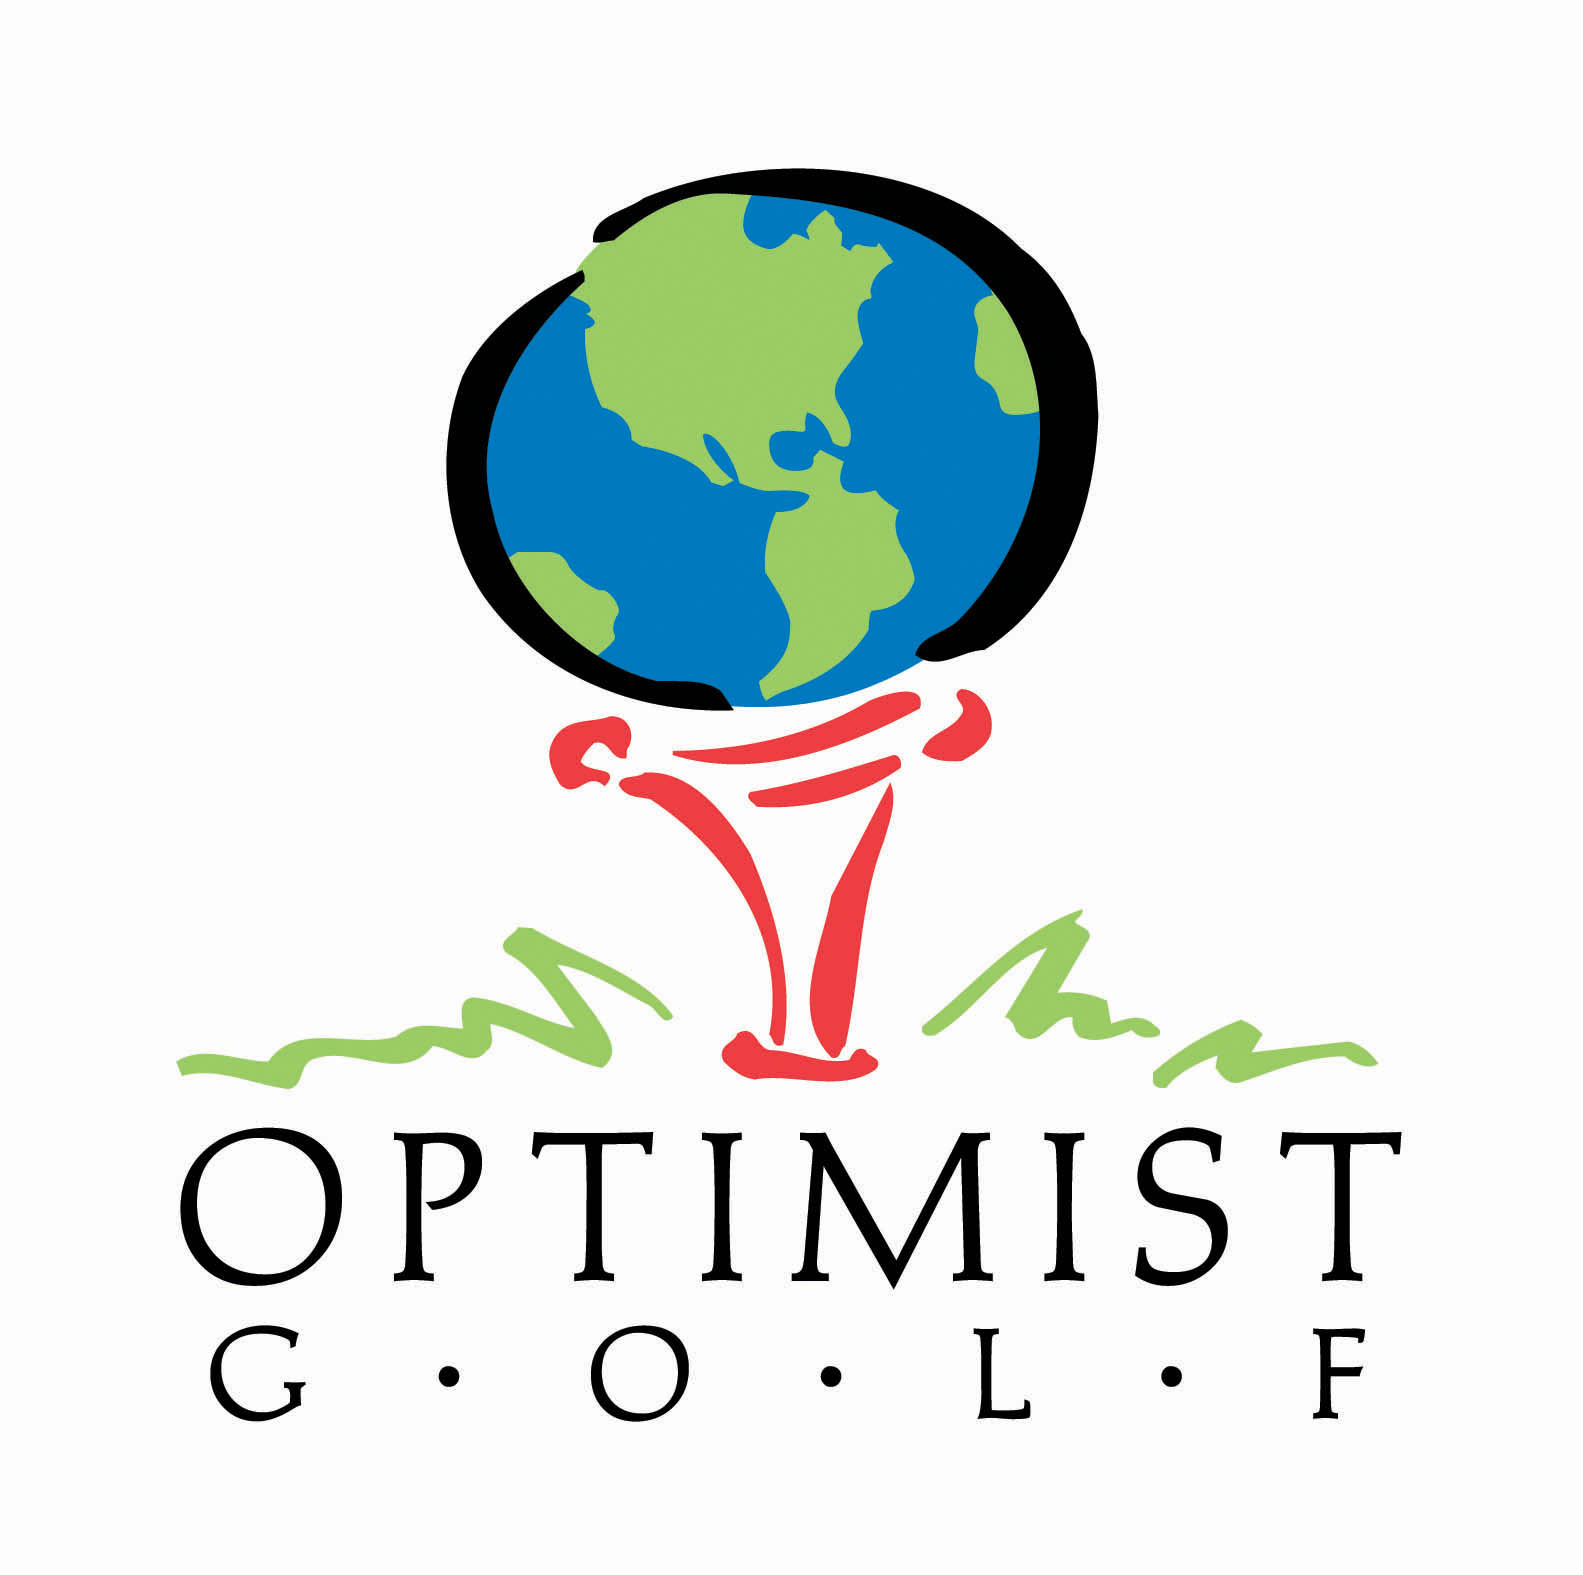 Optimist Golf Graphic